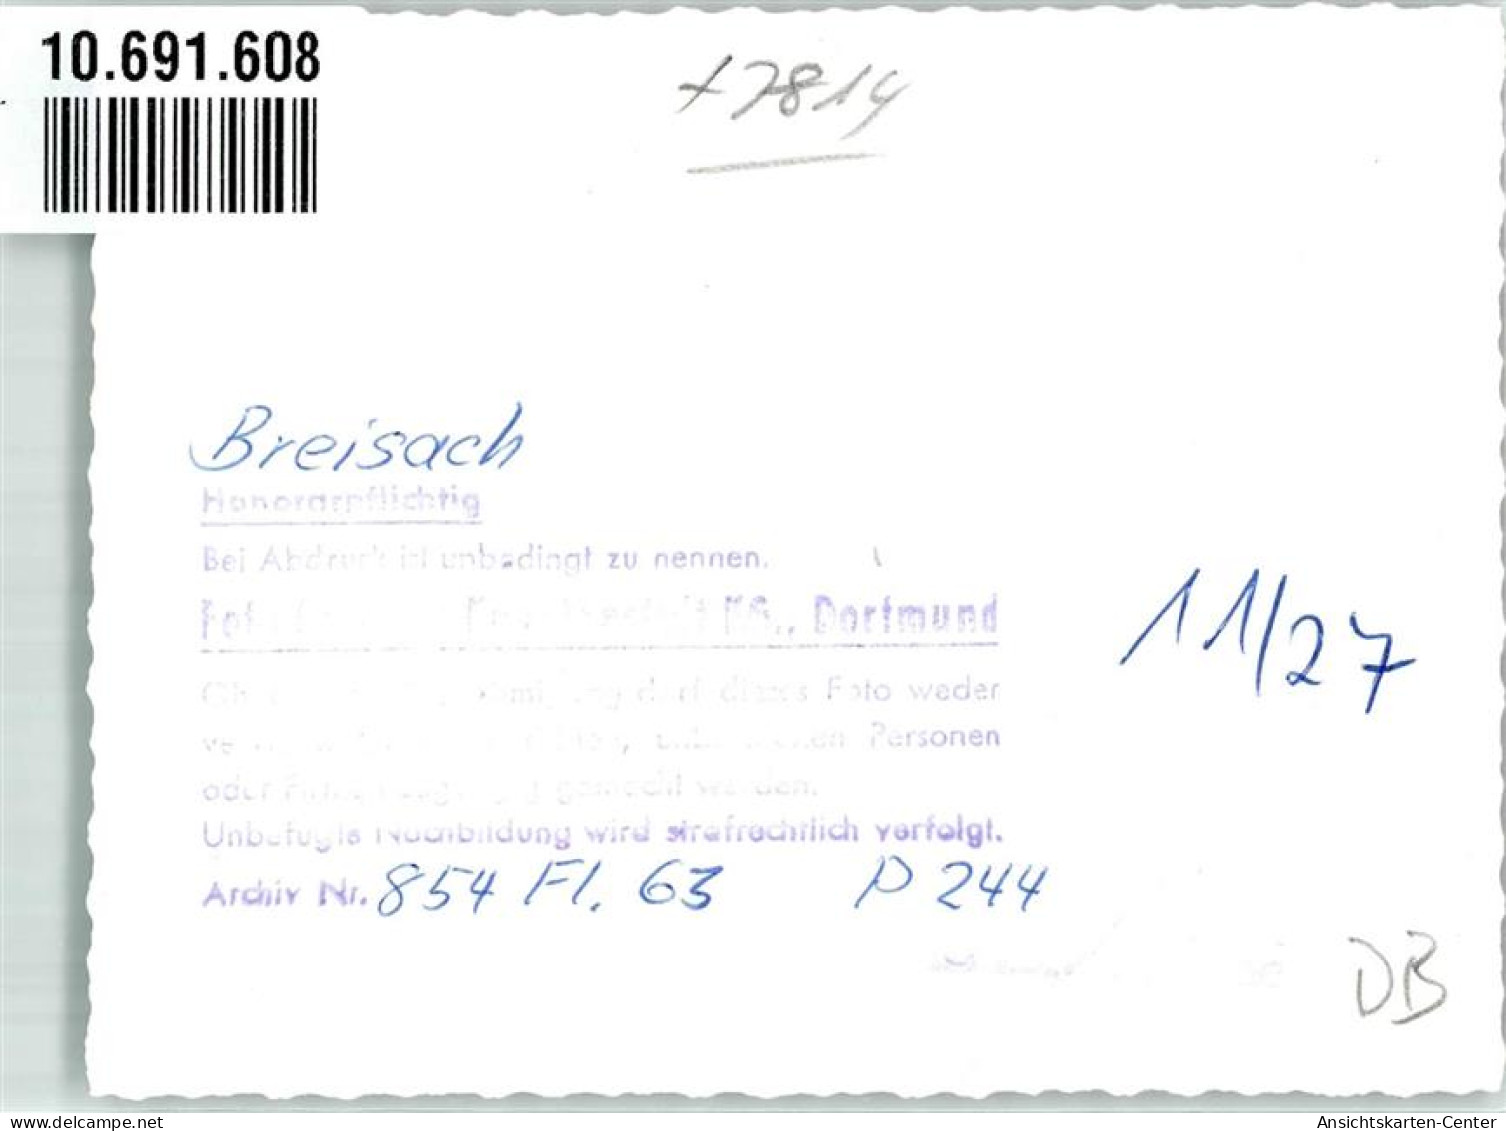 10691608 - Breisach Am Rhein - Breisach